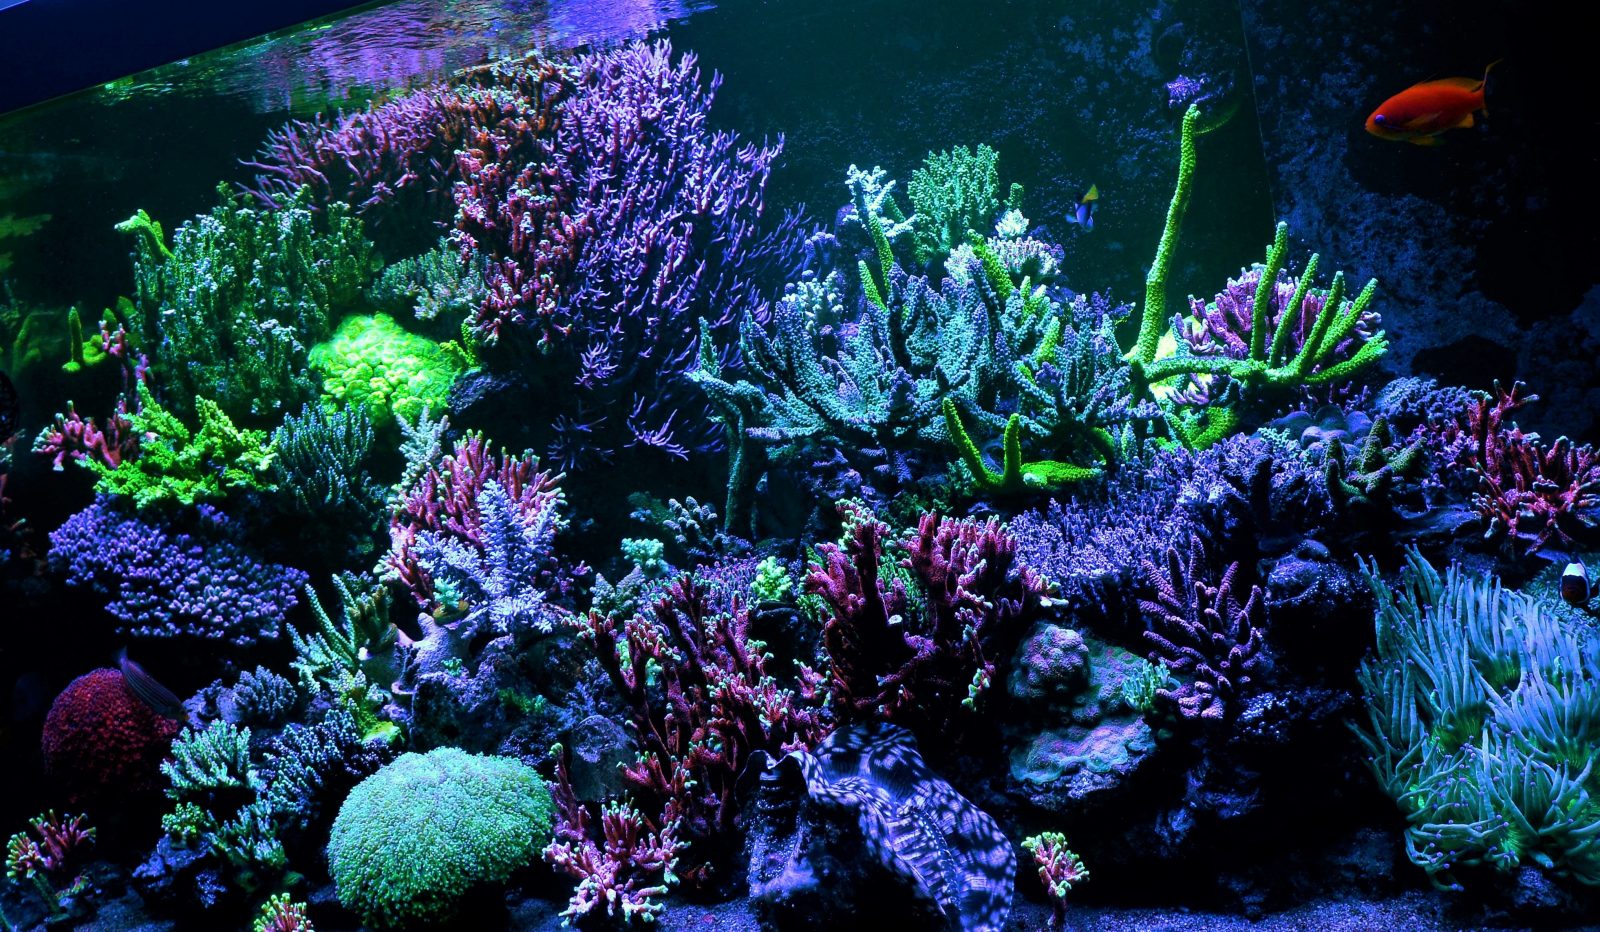 hồ cá rạn san hô tốt nhất chiếu sáng 2020